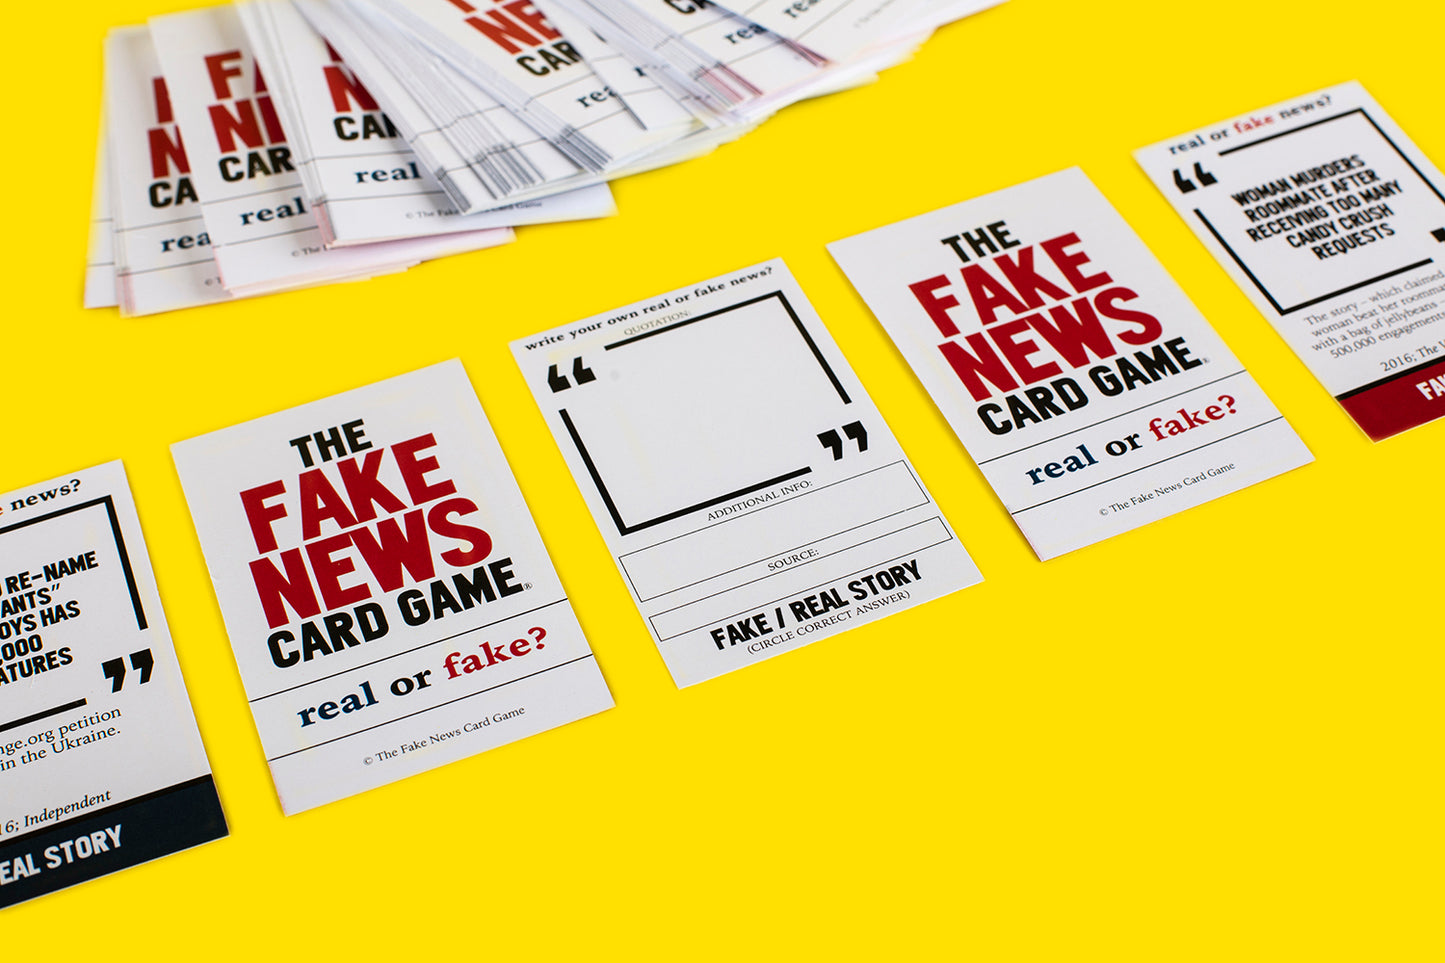 The Original Fake News Cards Game